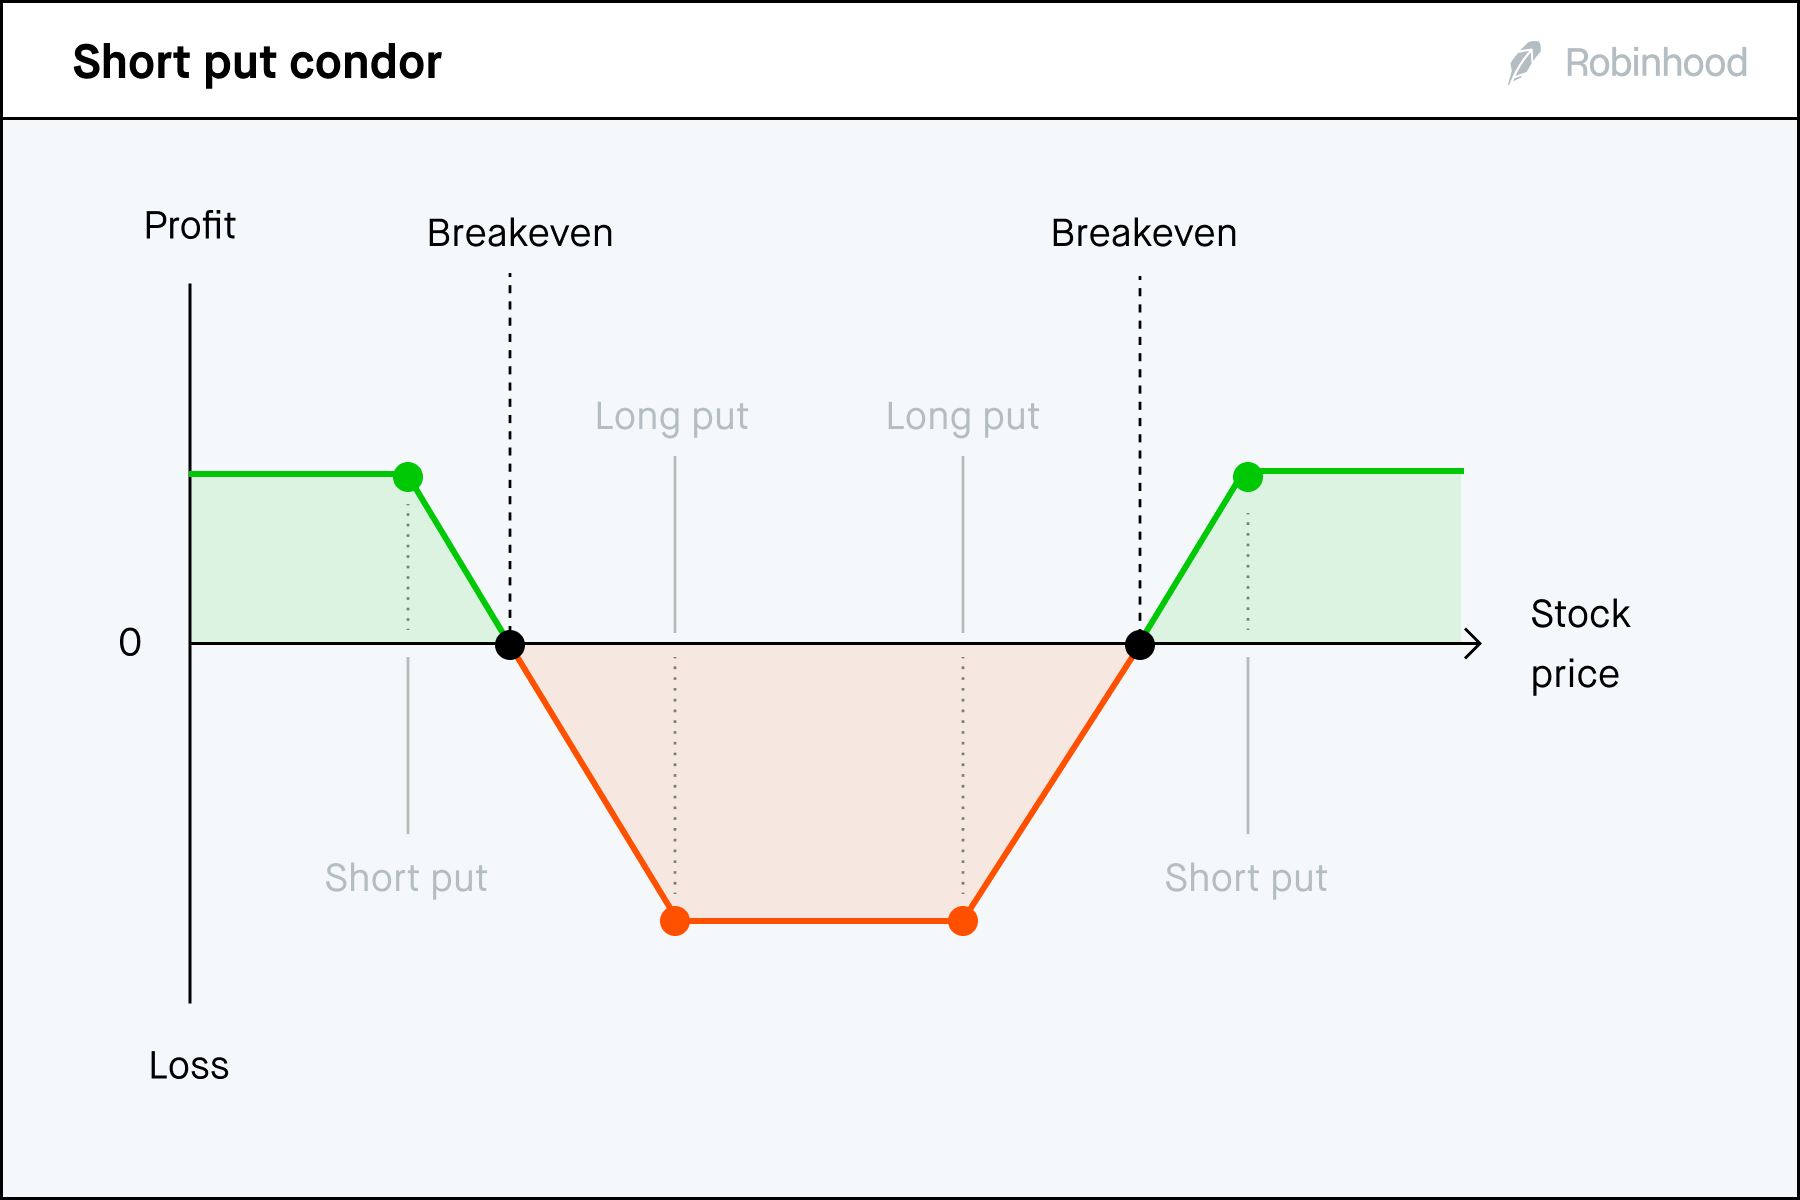 Short put condor P/L chart 3x